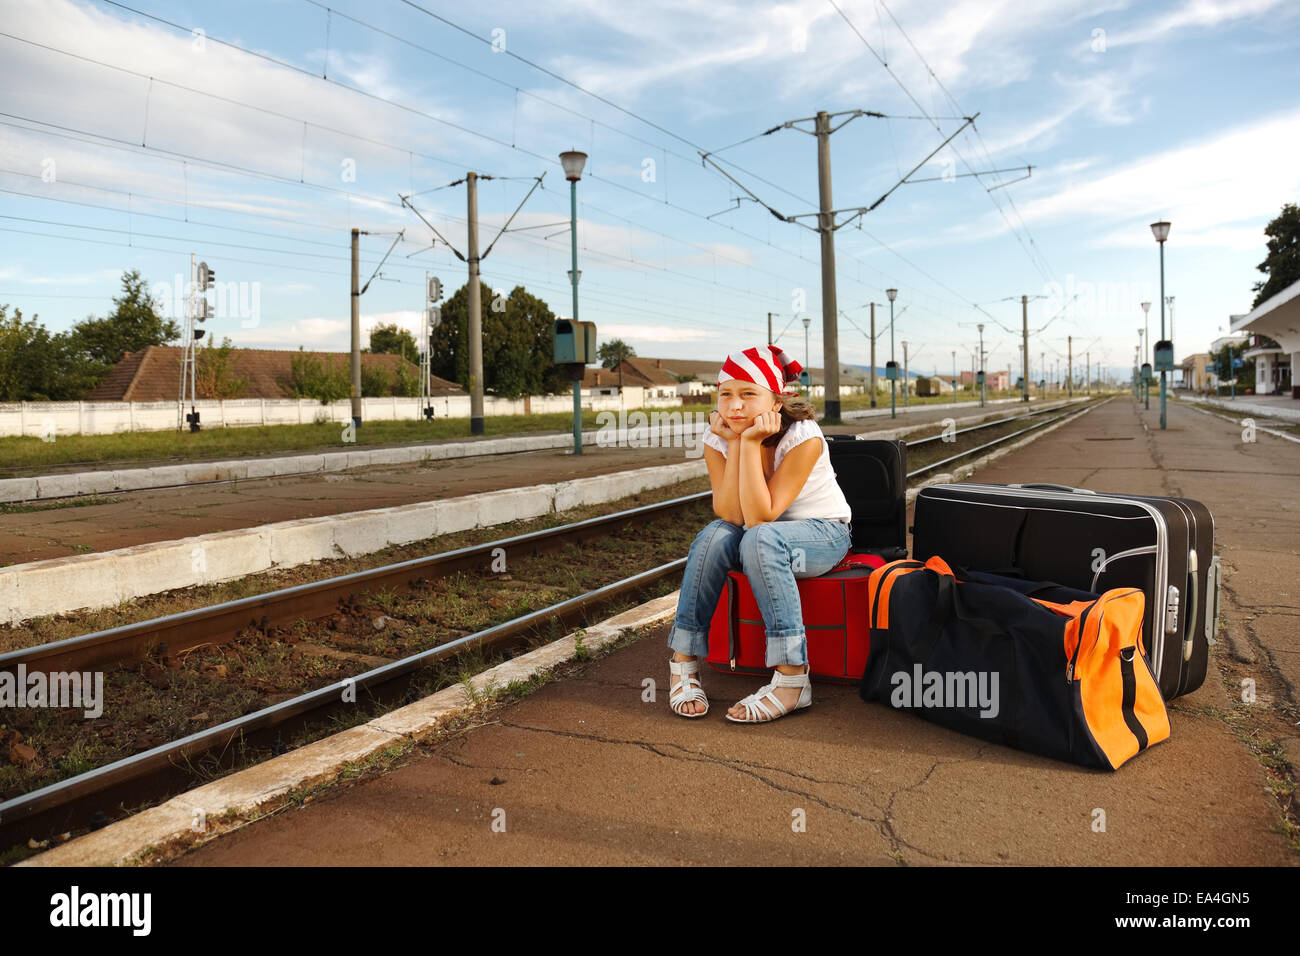 Переезжать или остаться. Люди на вокзале. Молодежь уезжает. Человек ждет поезд. Девушка с чемоданом.